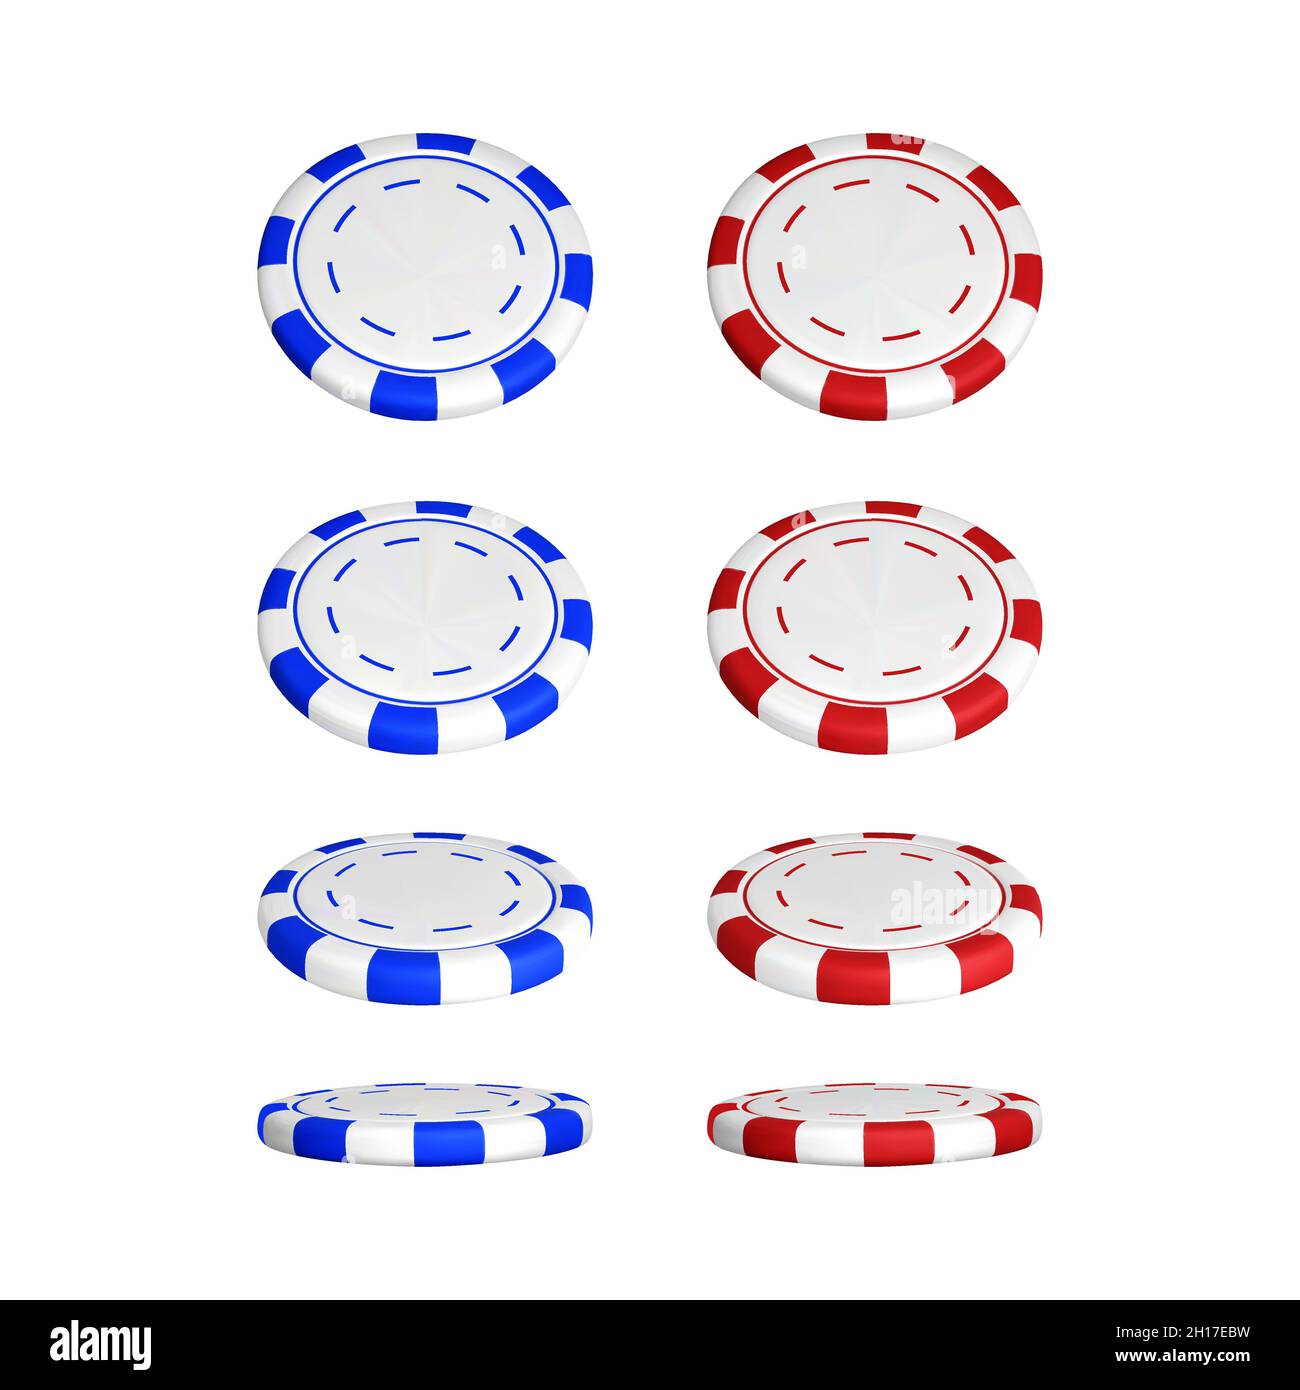 Poker-Chips in unterschiedlicher Position. Farbe rot und blau Casino-Chips isoliert auf weißem Hintergrund. Vektorgrafik Stock Vektor